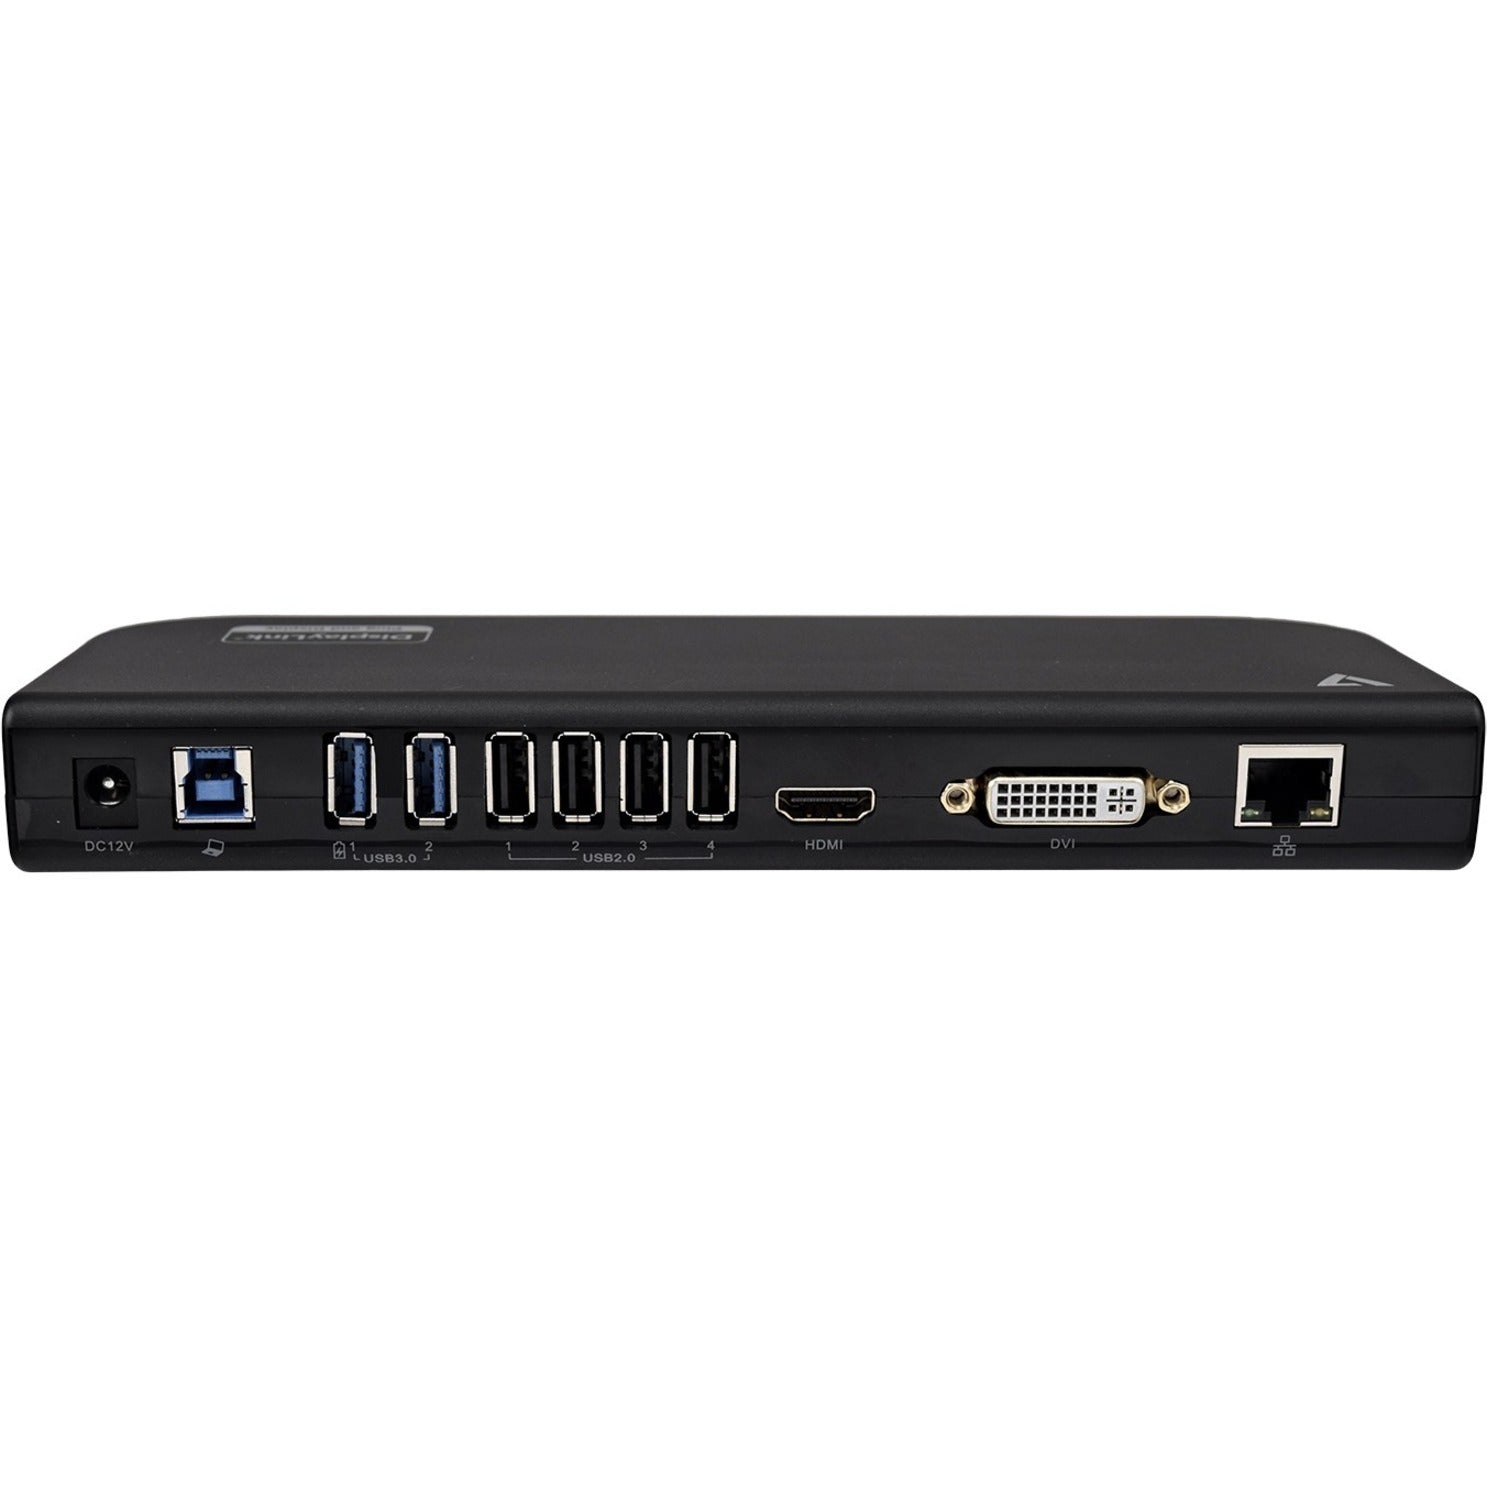 V7 UDDS2 USB Dual DisplayLink Docking Station, 2K QHD, 6 USB Ports, Ethernet